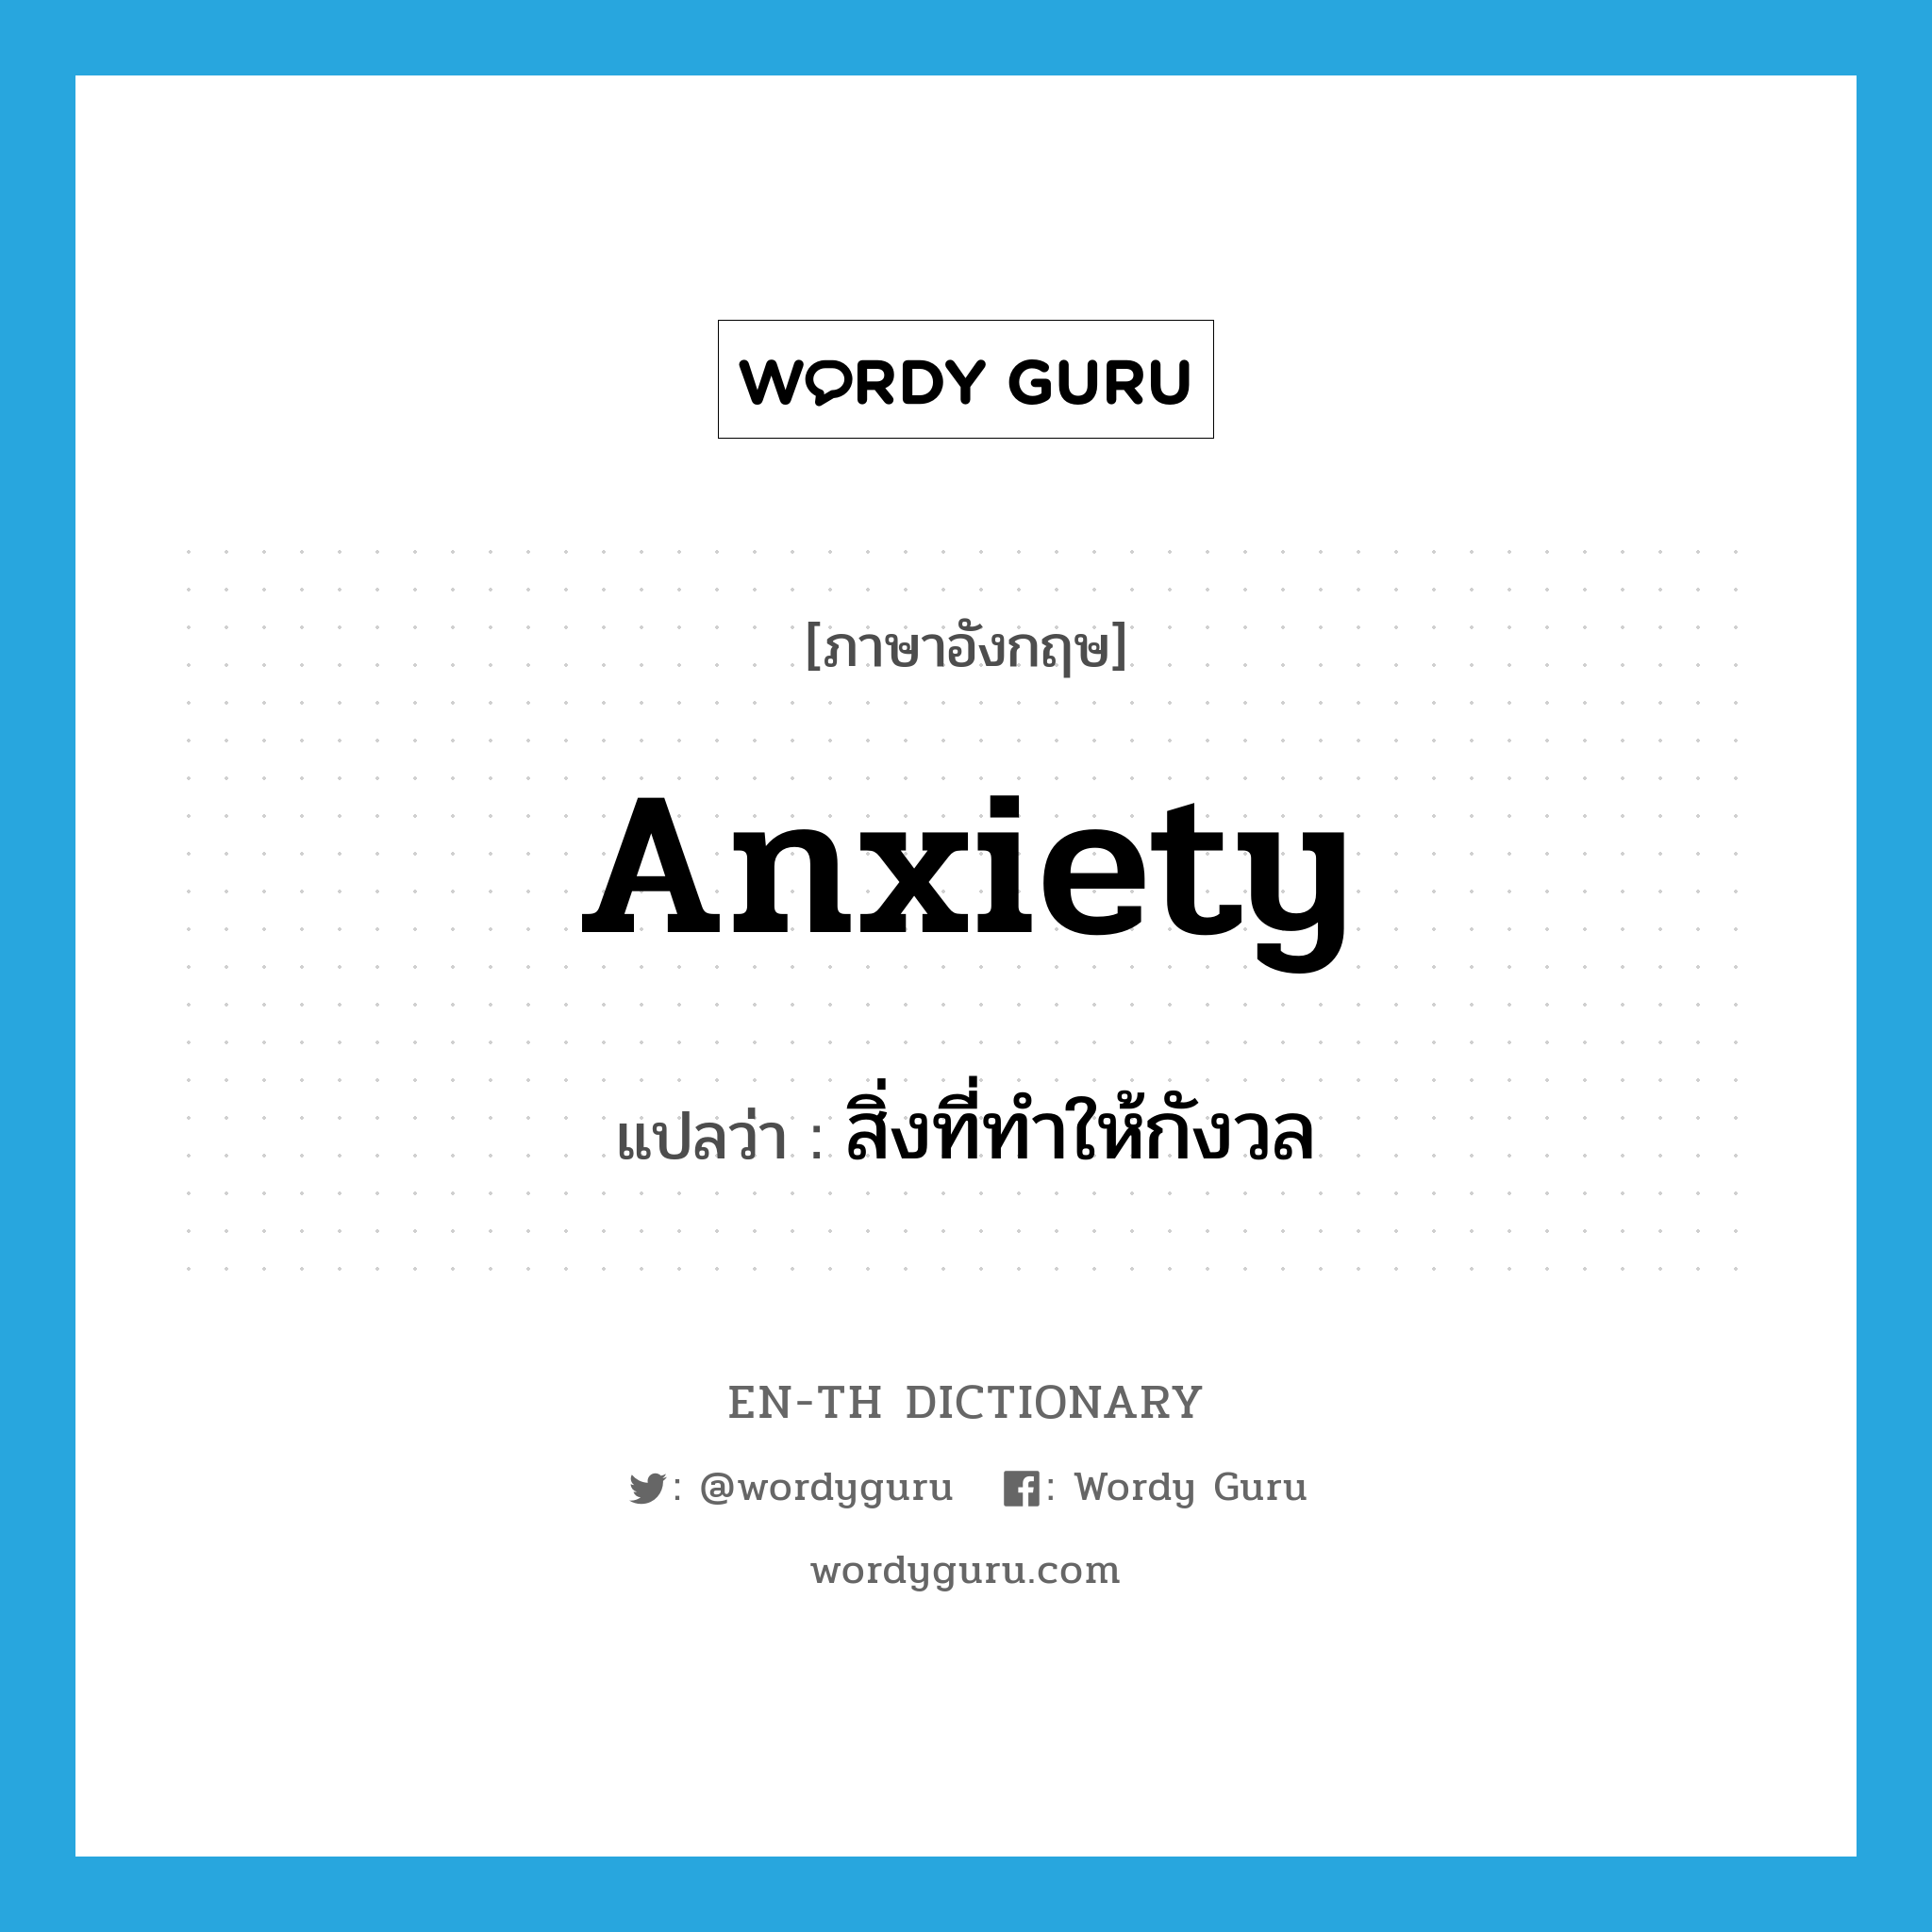 สิ่งที่ทำให้กังวล ภาษาอังกฤษ?, คำศัพท์ภาษาอังกฤษ สิ่งที่ทำให้กังวล แปลว่า anxiety ประเภท N หมวด N